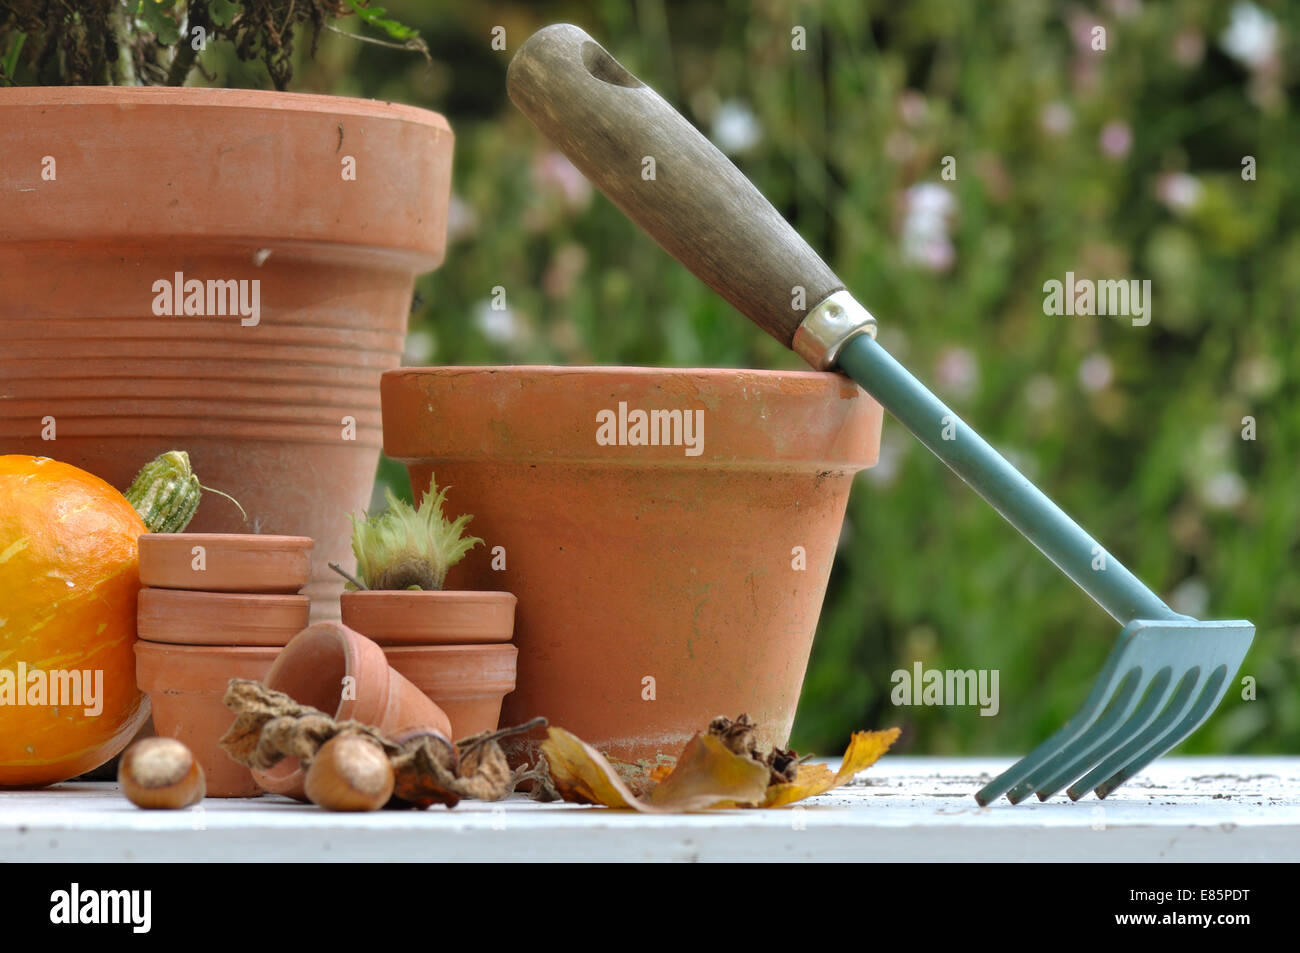 Potiron, noisettes et de feuilles mortes entre les pots de terre cuite avec peu de rake Banque D'Images